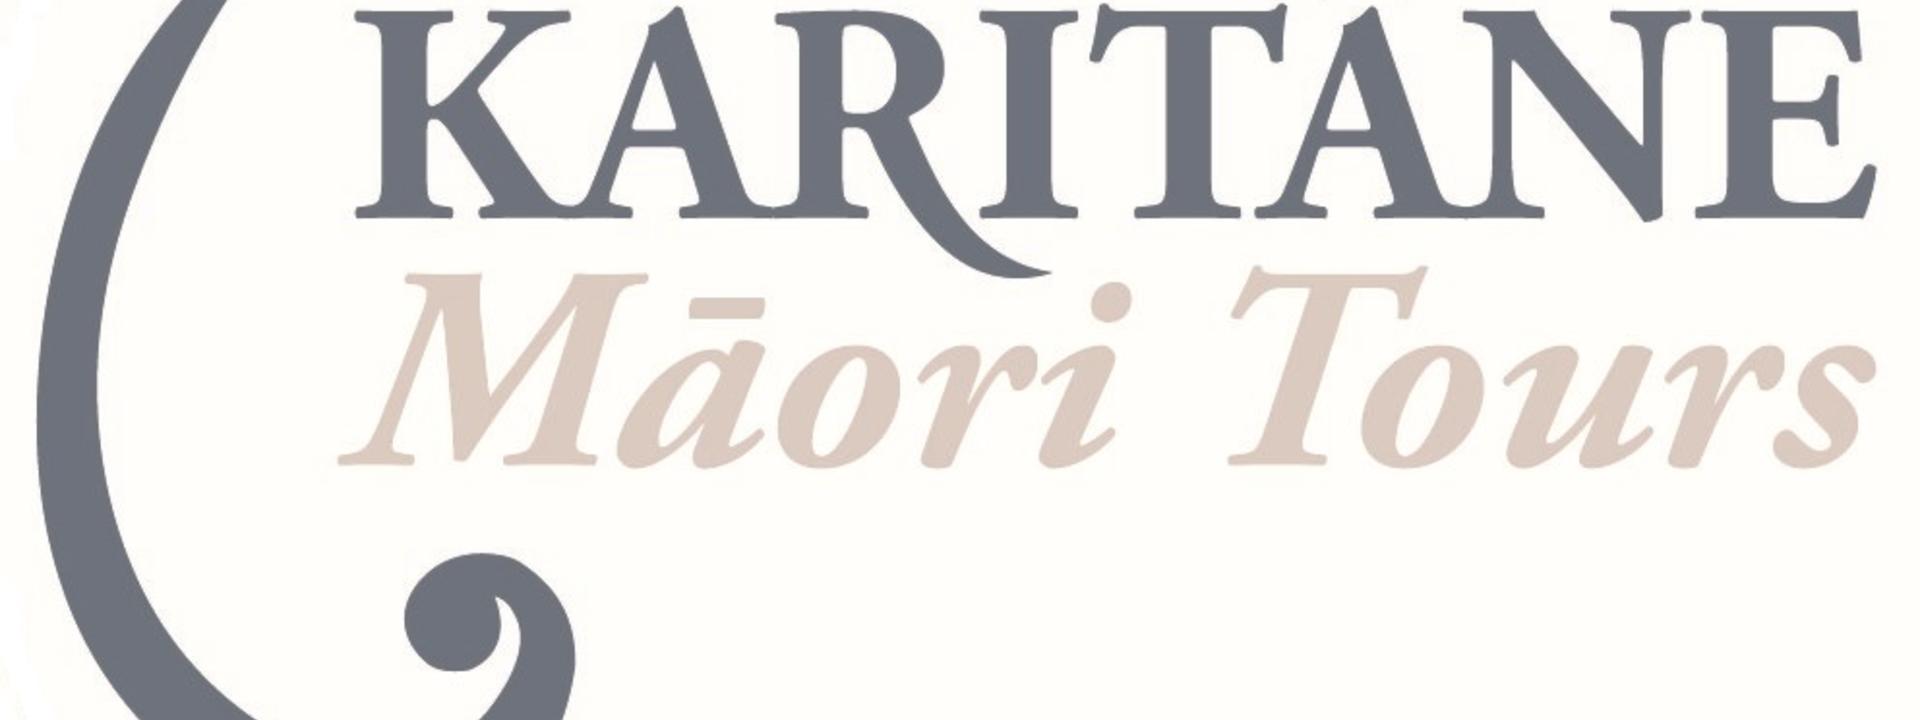 karitane-maori-tours-logo.jpg